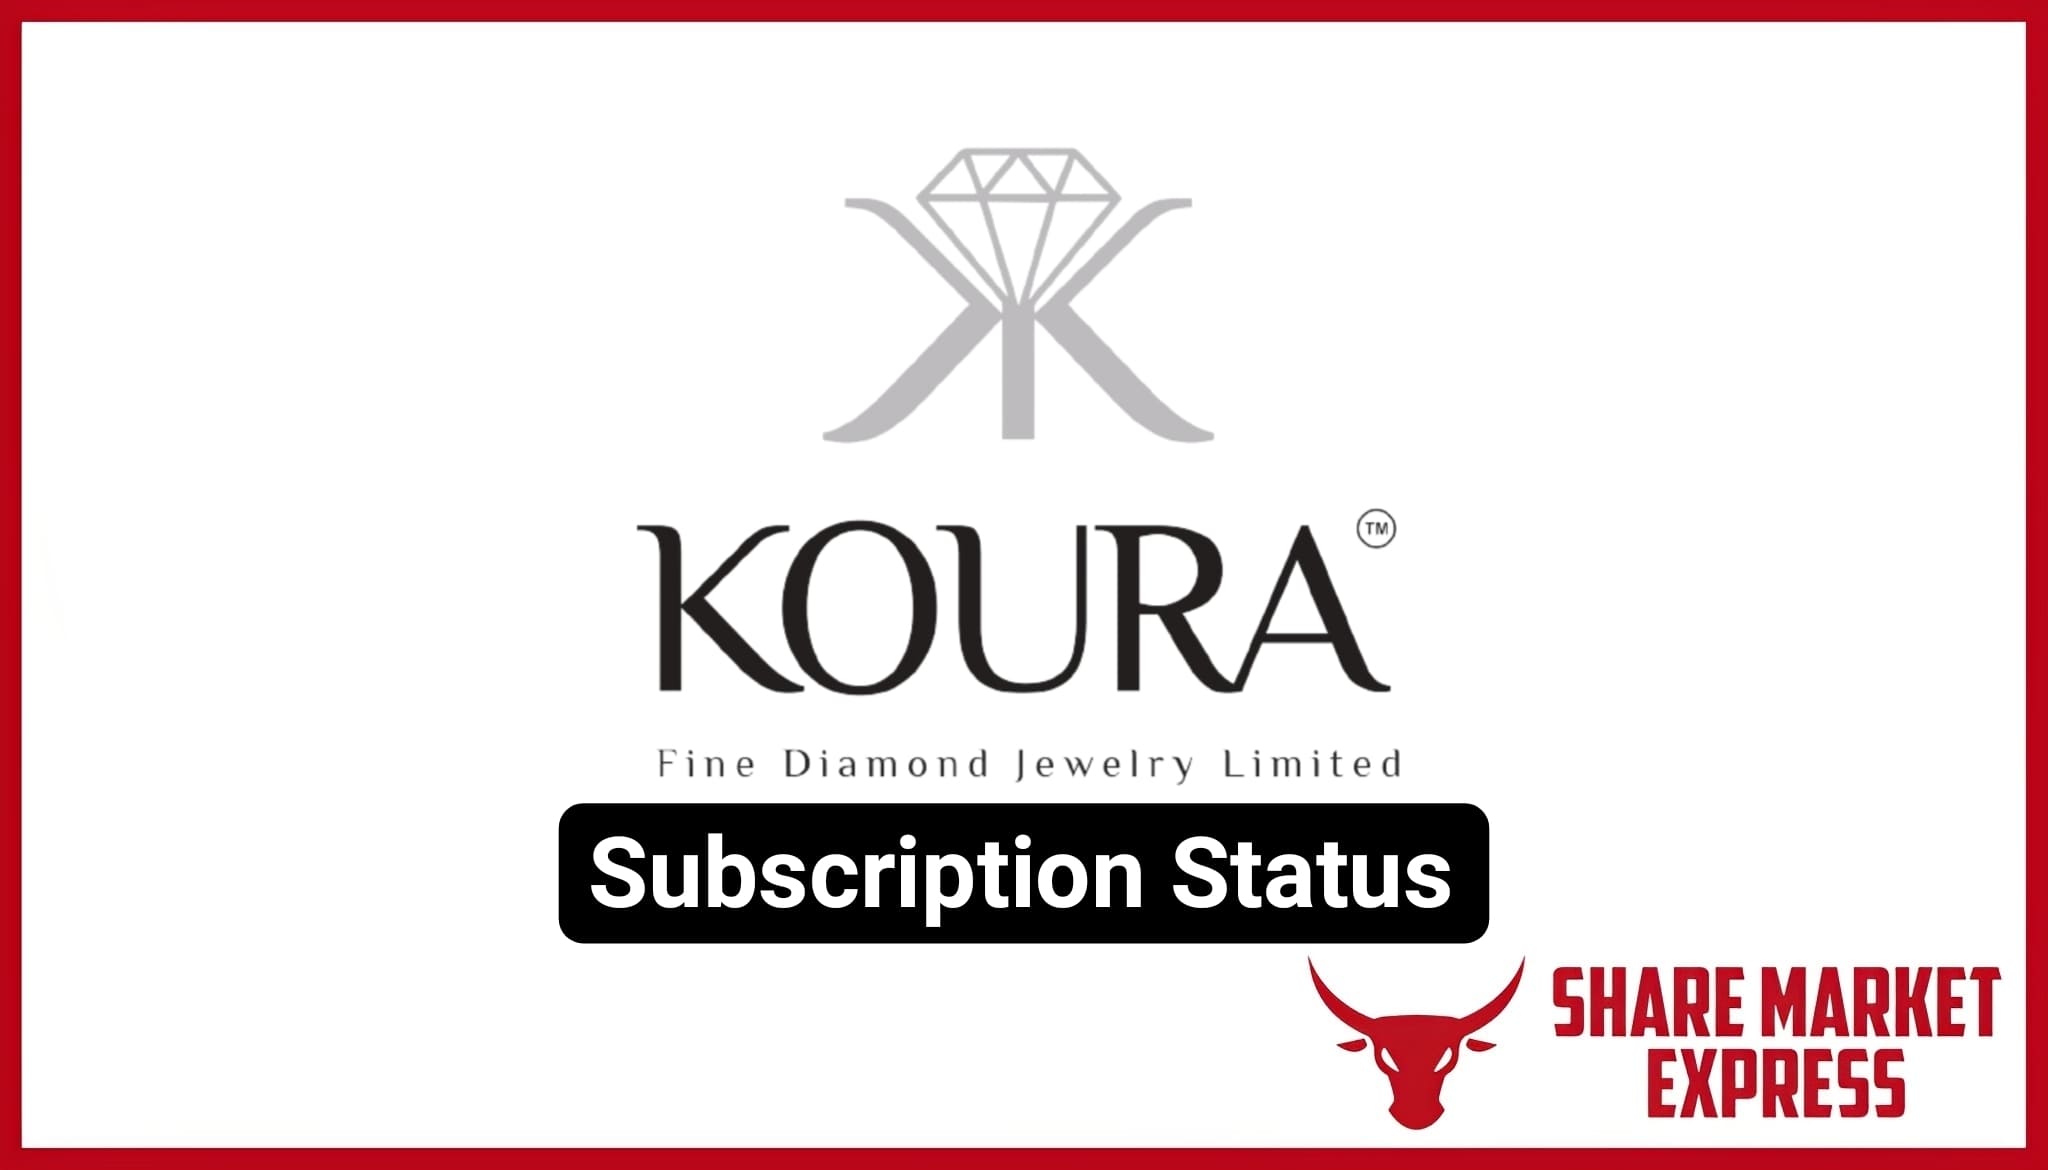 Koura Fine Diamond IPO Subscription Status | Koura Fine Diamond Jewelry Limited IPO Subscription Status | Koura Fine Diamond Jewelry IPO Subscription Status